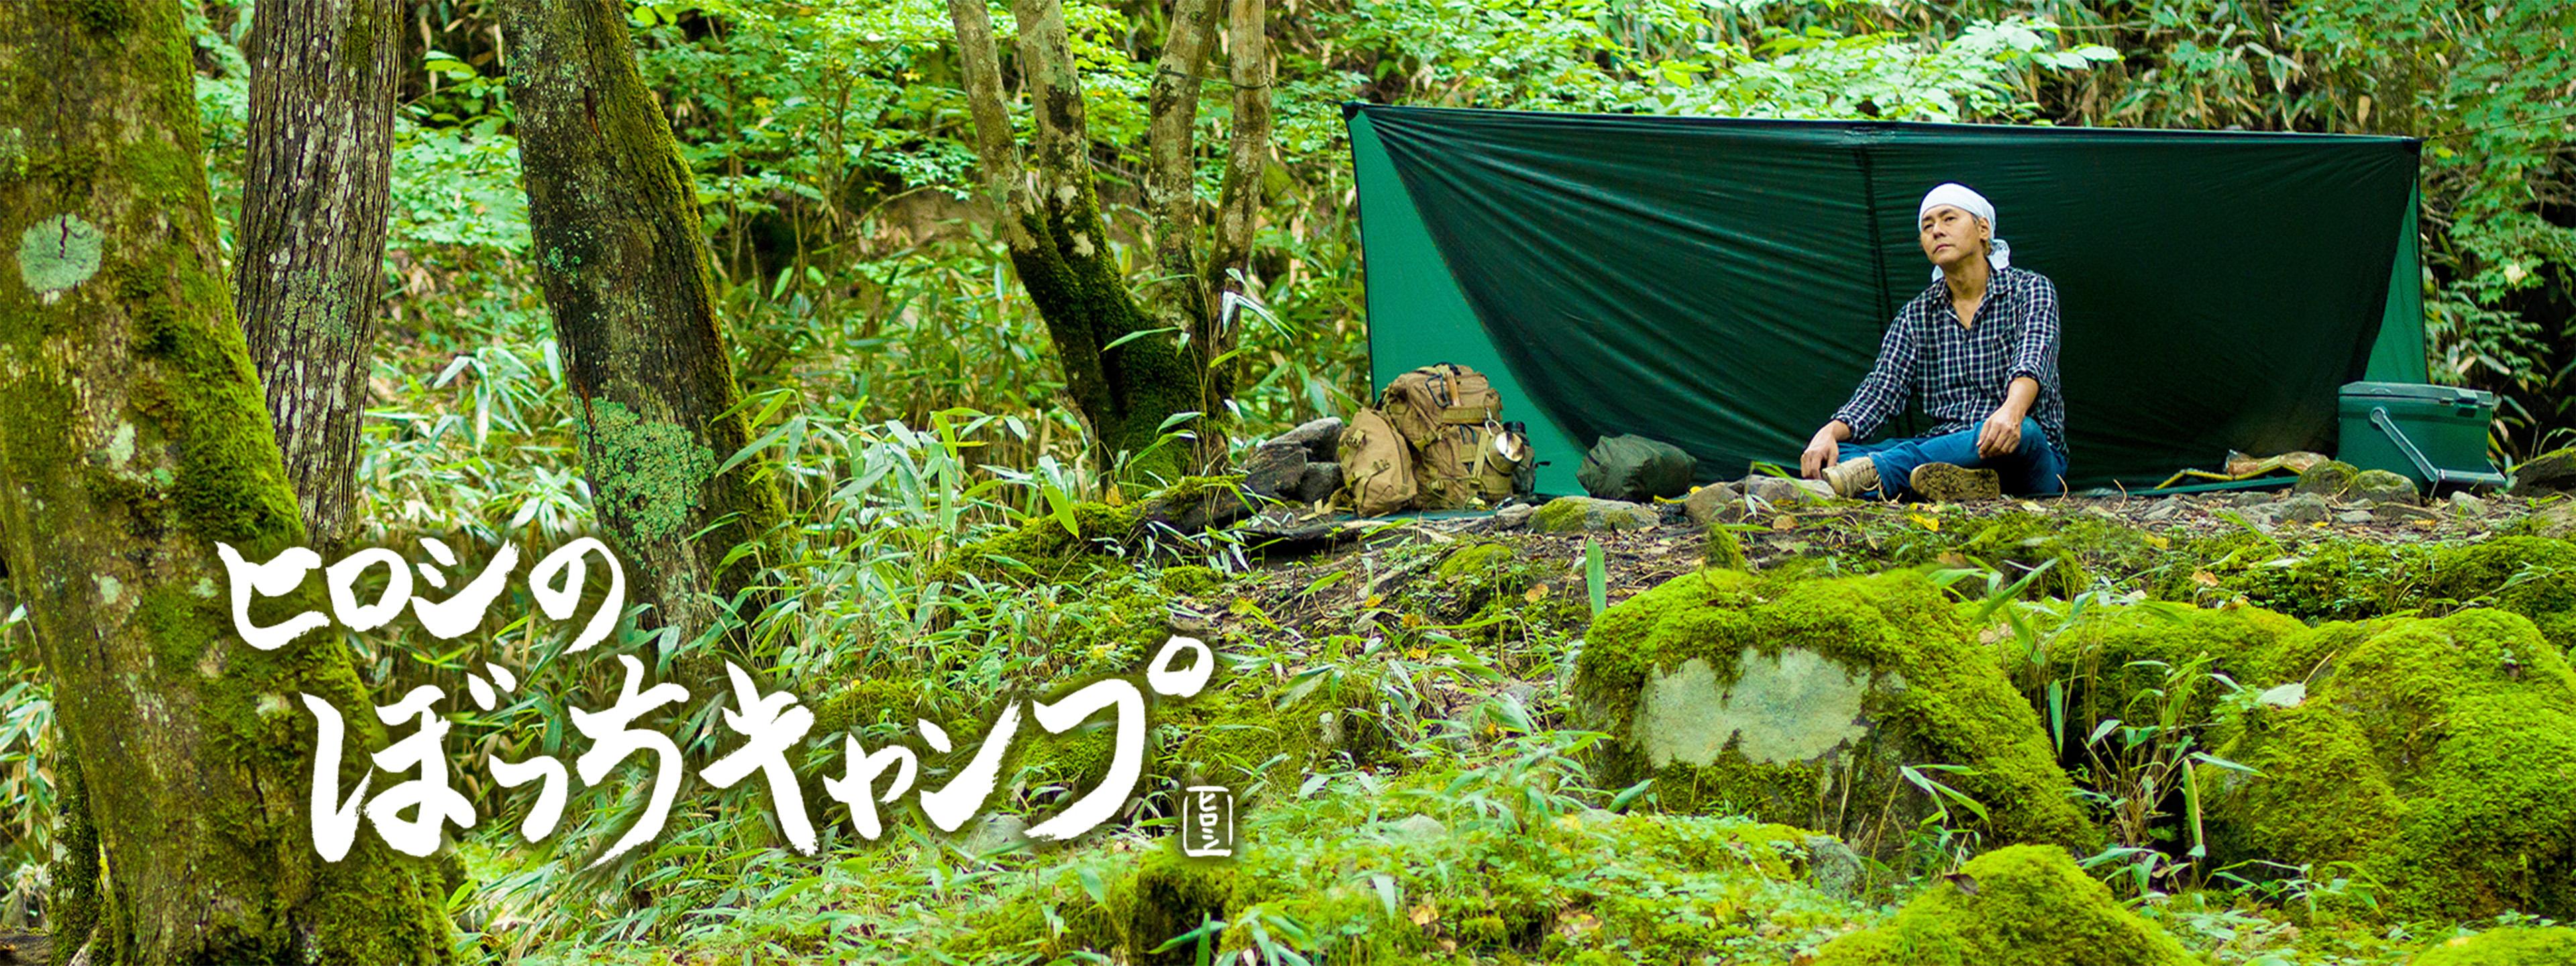 ヒロシのぼっちキャンプ | Hulu(フールー)